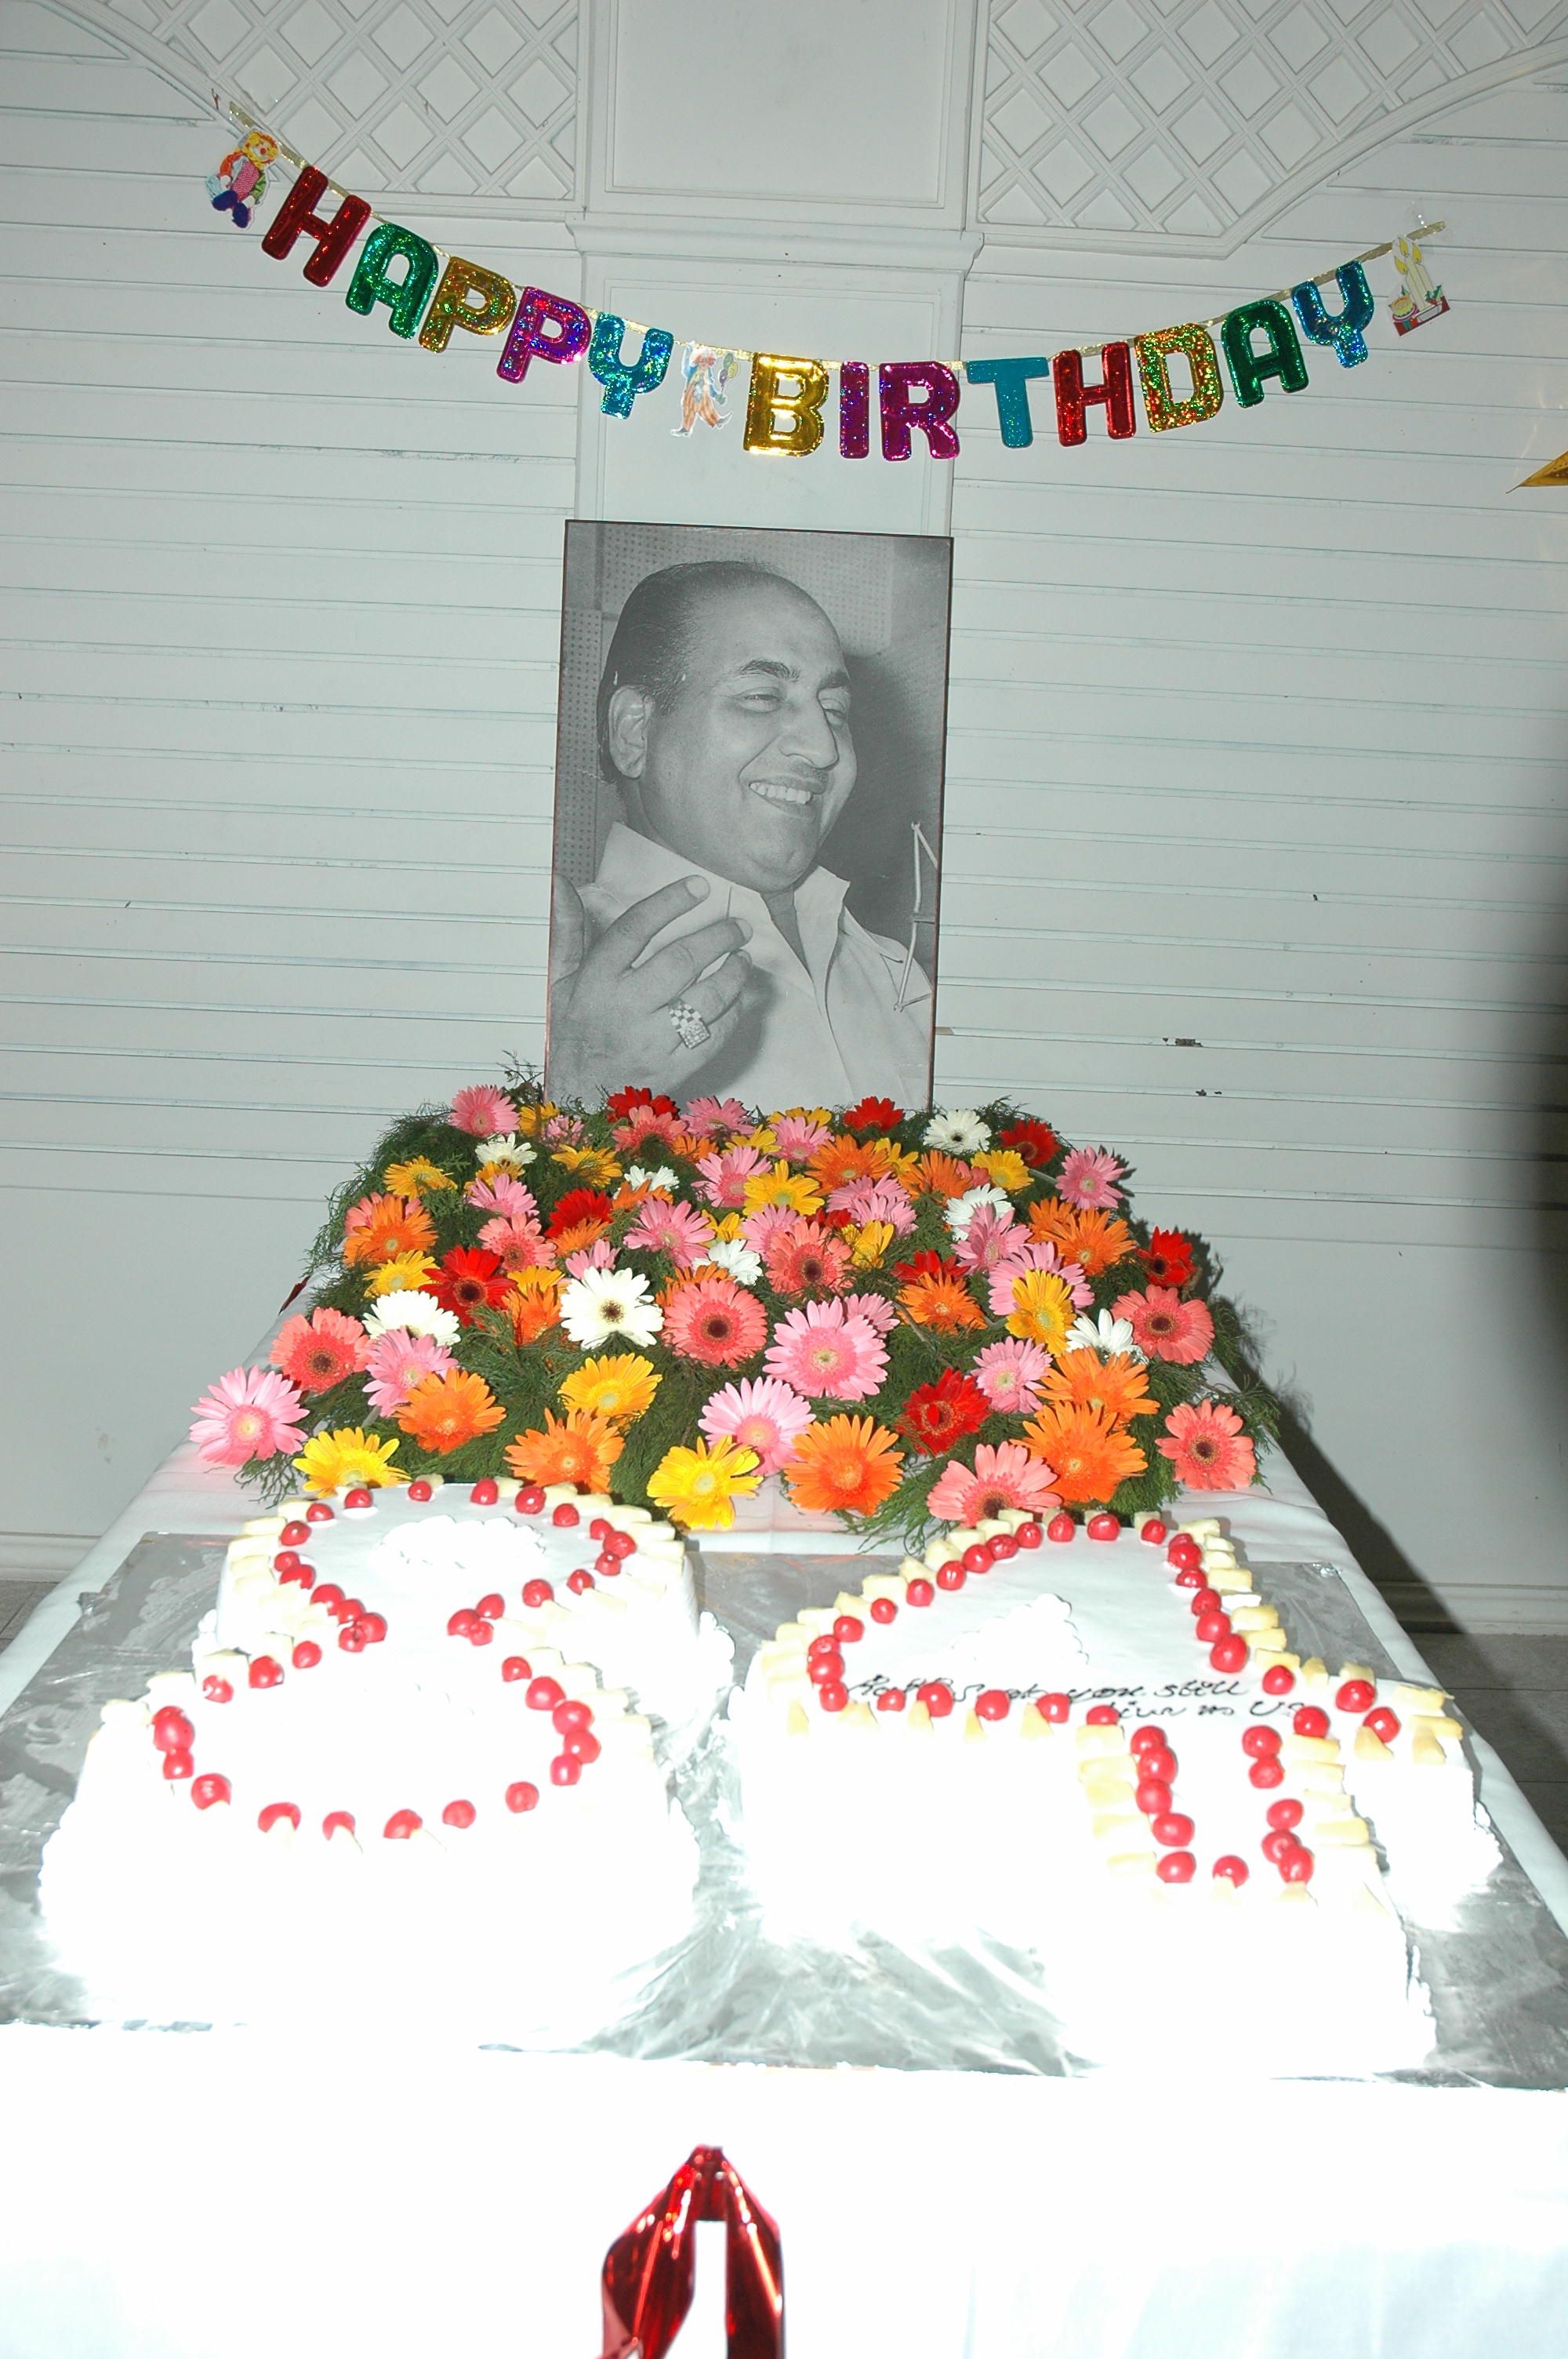 Mohd Rafi's Birthday Celebration by Baar Baar Rafi on Dec 24th 2008 in Bangalore 